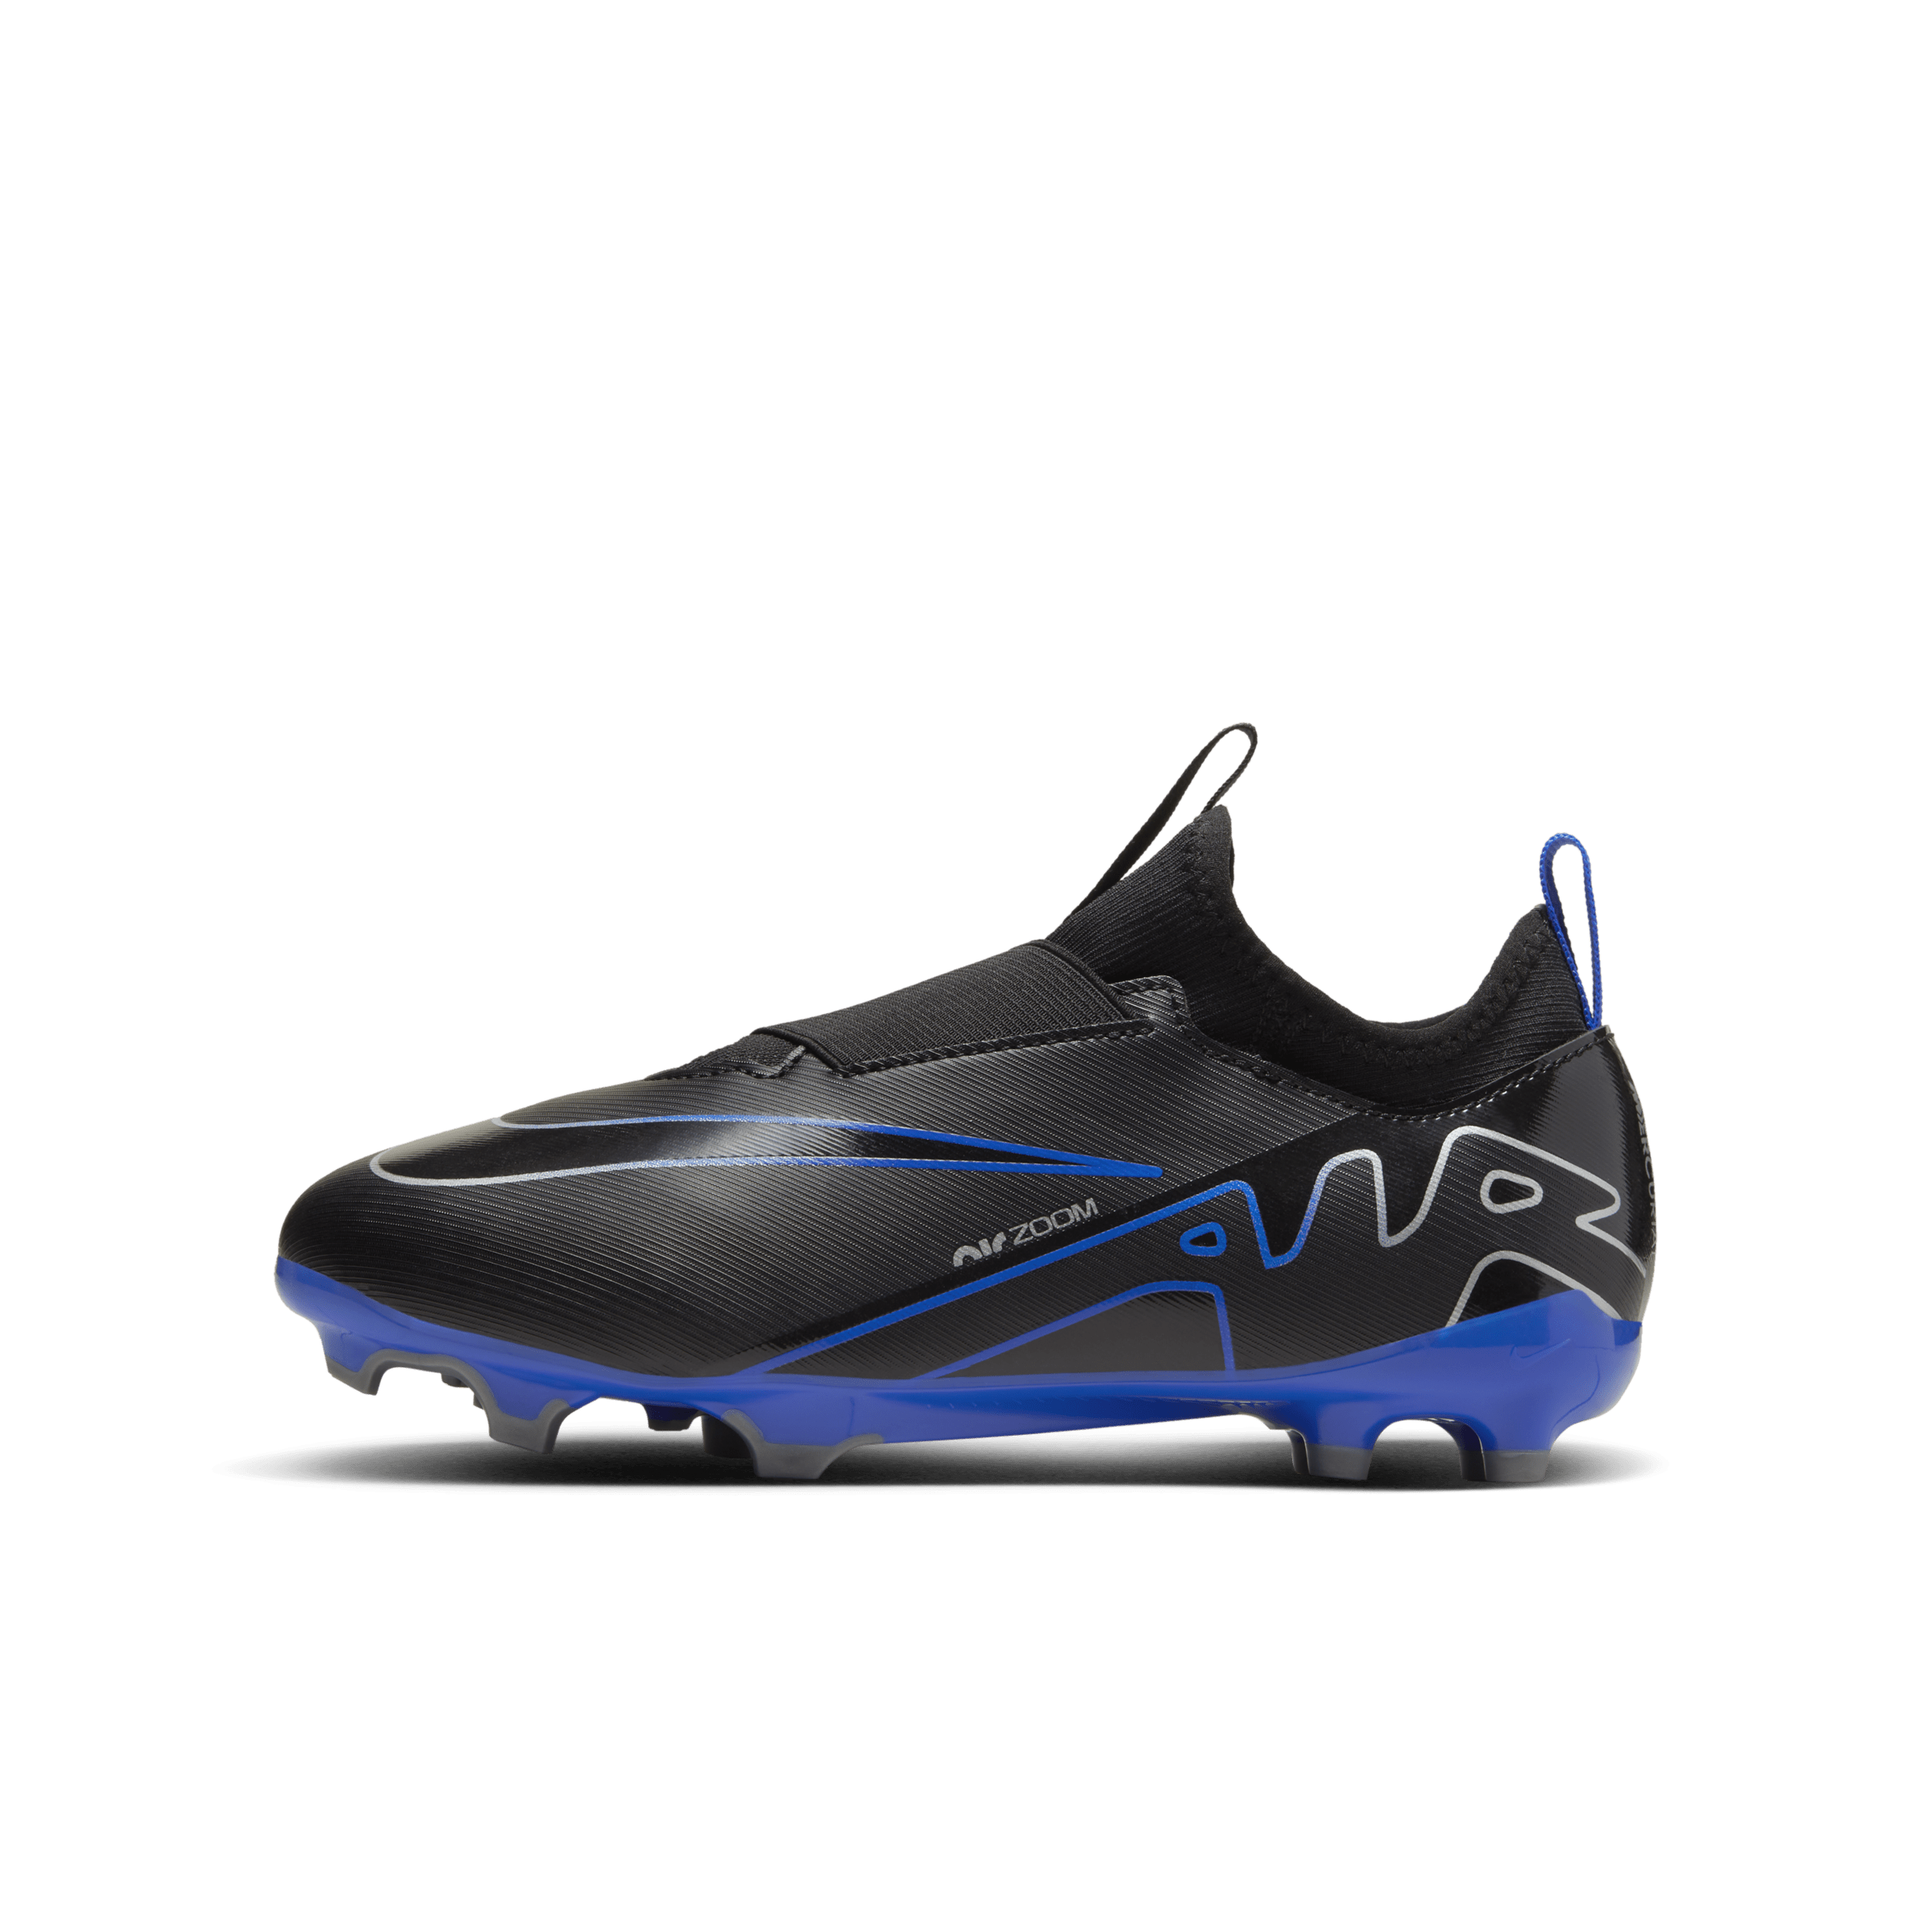 Scarpa da calcio multiterreno a taglio basso Nike Jr. Mercurial Vapor 15 Academy – Bambini/Ragazzi - Nero